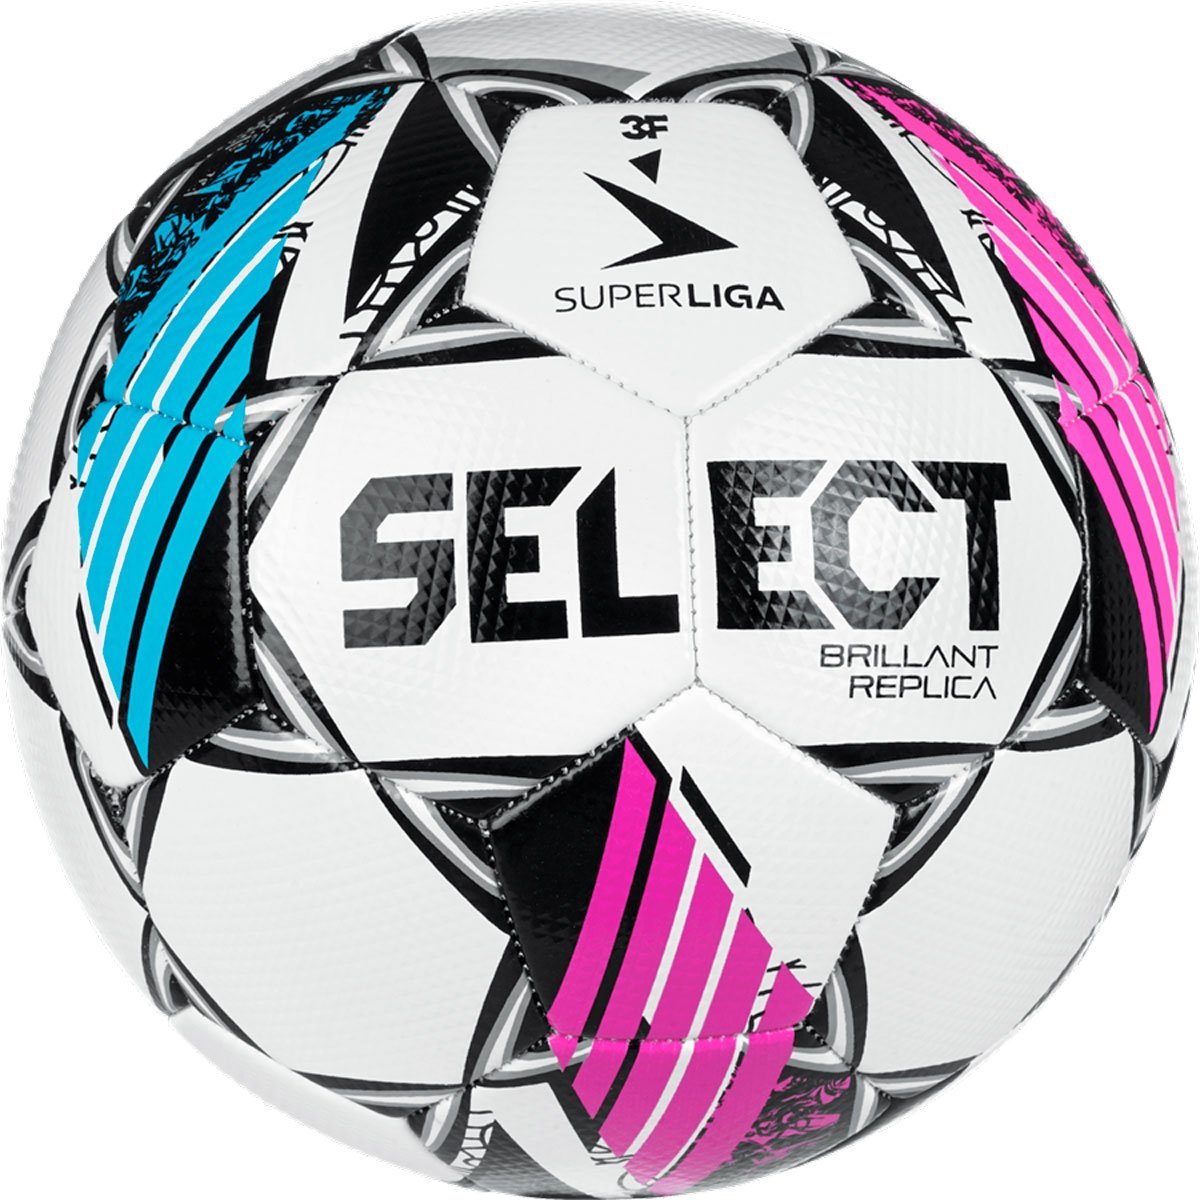 Select Brillant Replica 3F Superliga Fodbold